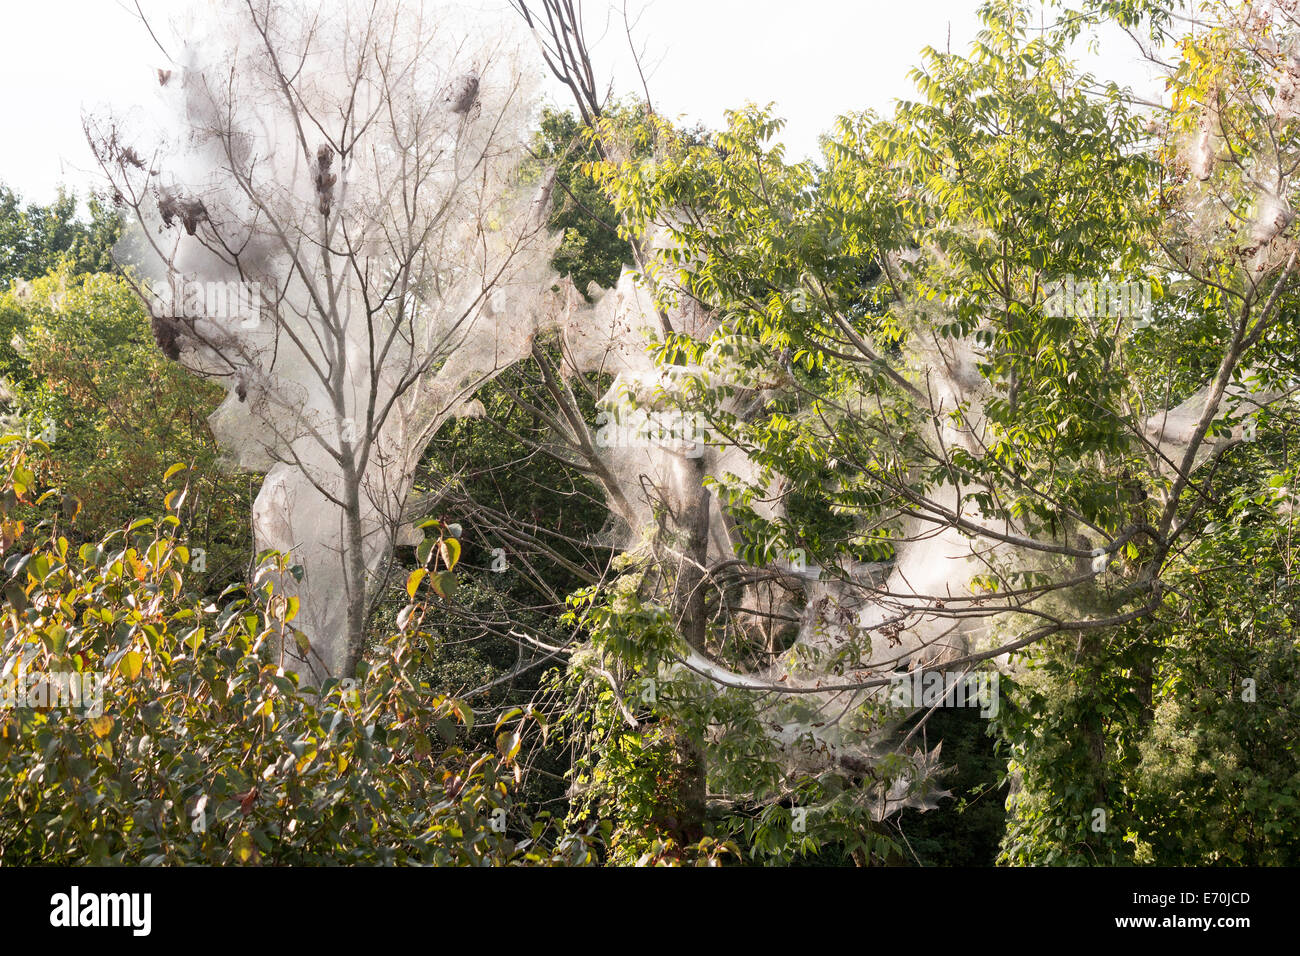 Arbres d'une forêt couverte de soie livrée au cours d'une épidémie Banque D'Images